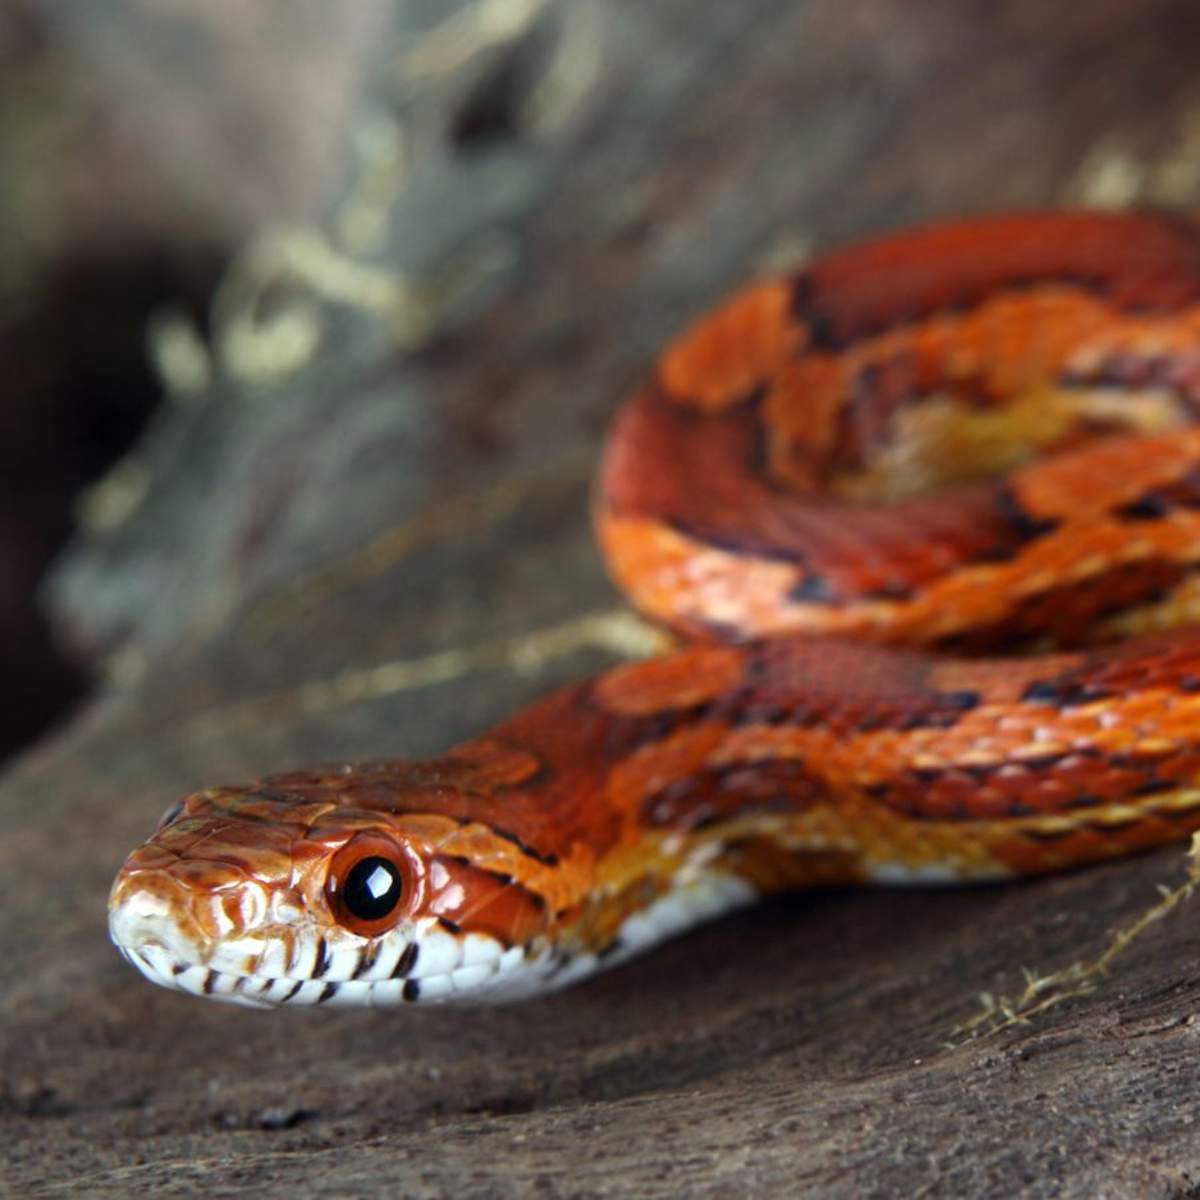 Soñar con serpientes: ¿qué significa y cómo debemos interpretarlo?